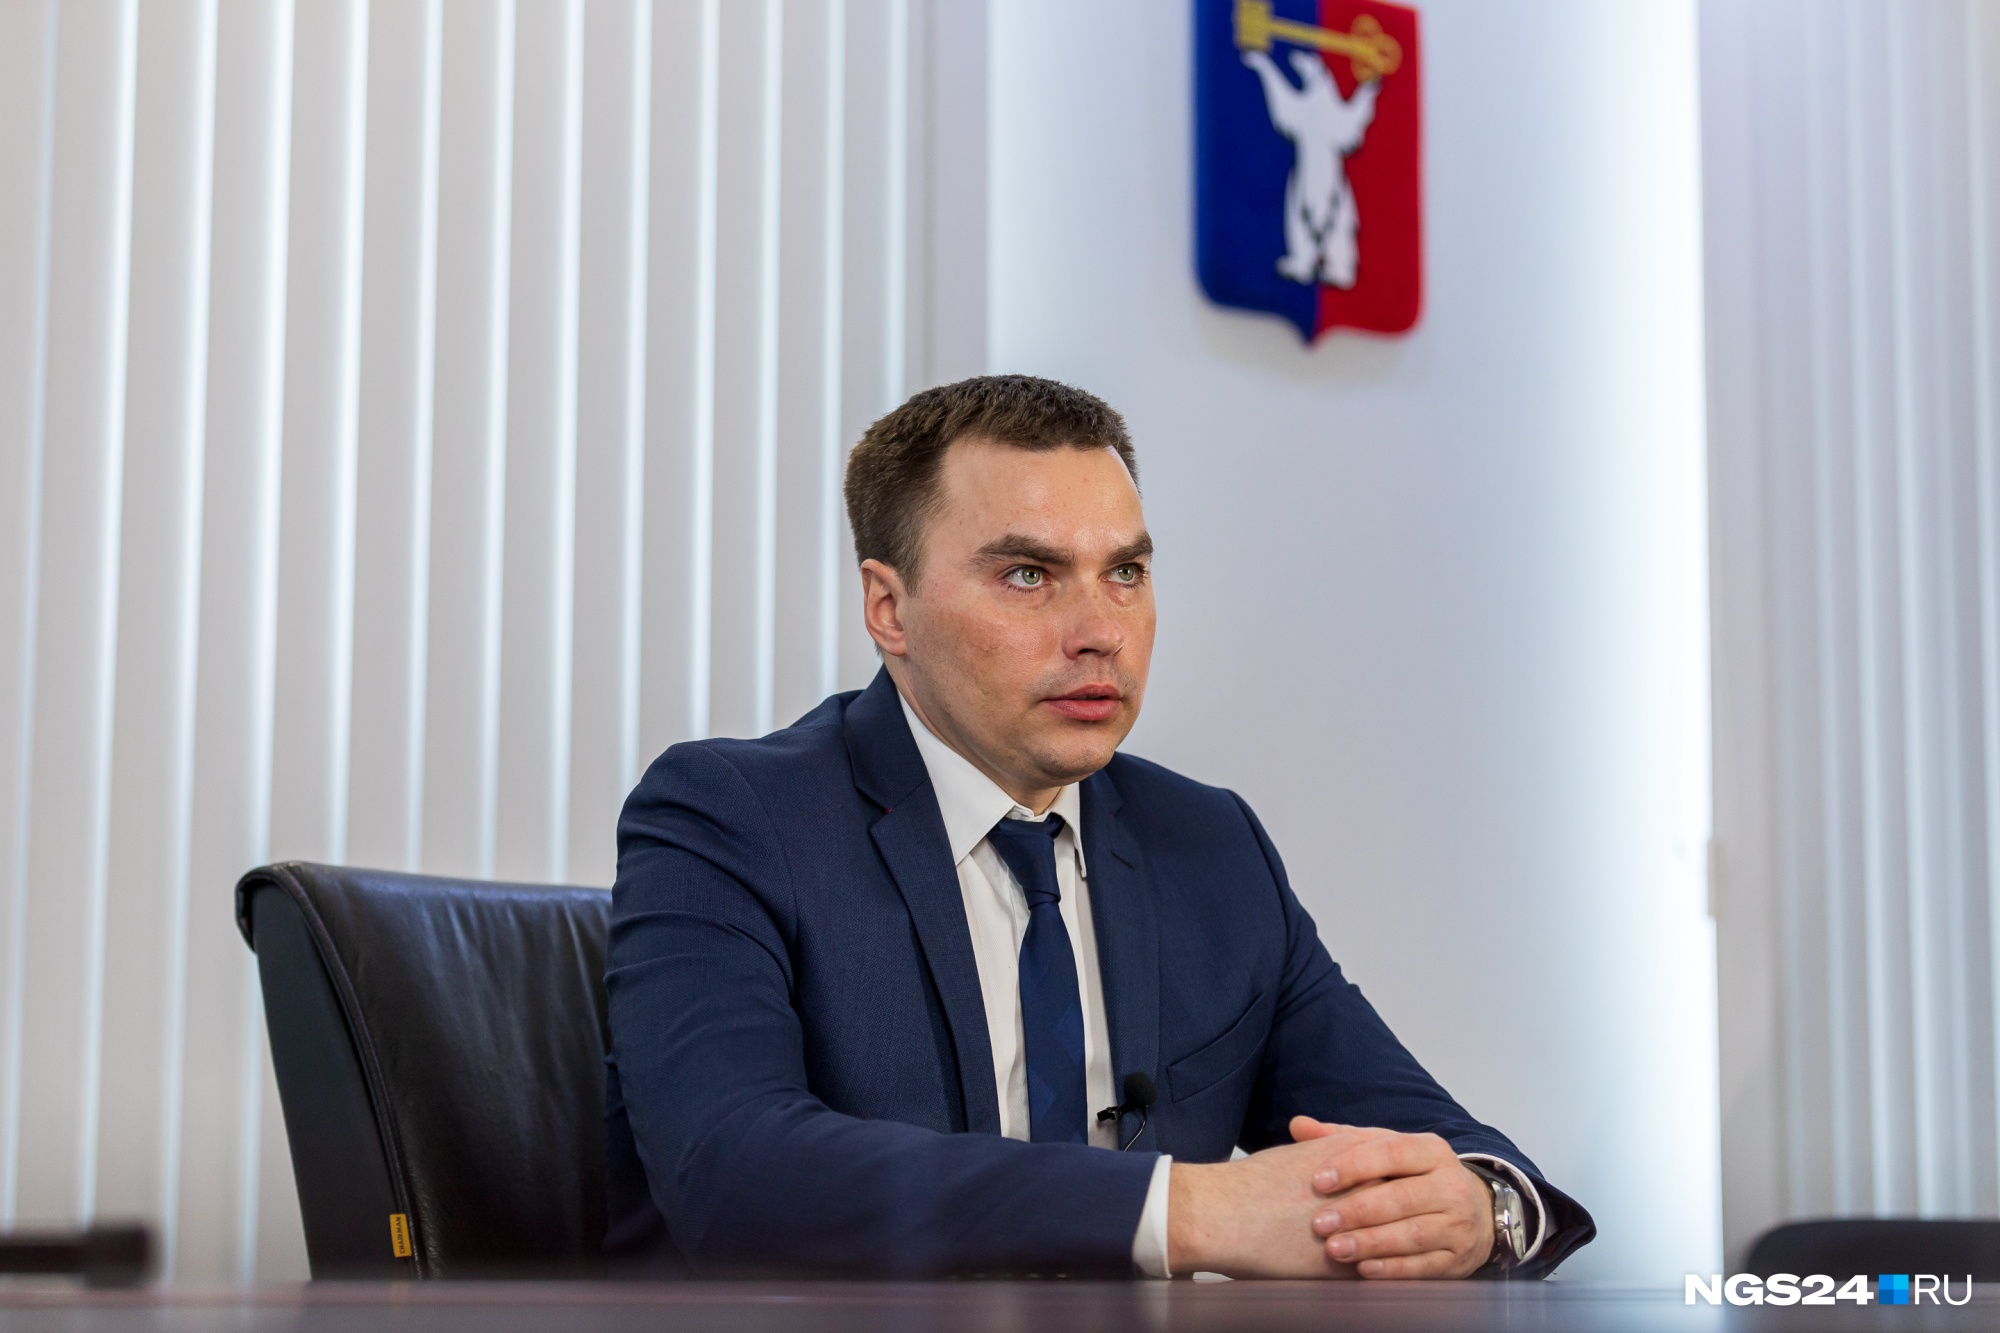 Дмитрий Карасёв стал главой Норильска этой зимой. Здесь нет прямых выборов, он обошел на голосовании думы кандидата губернатора